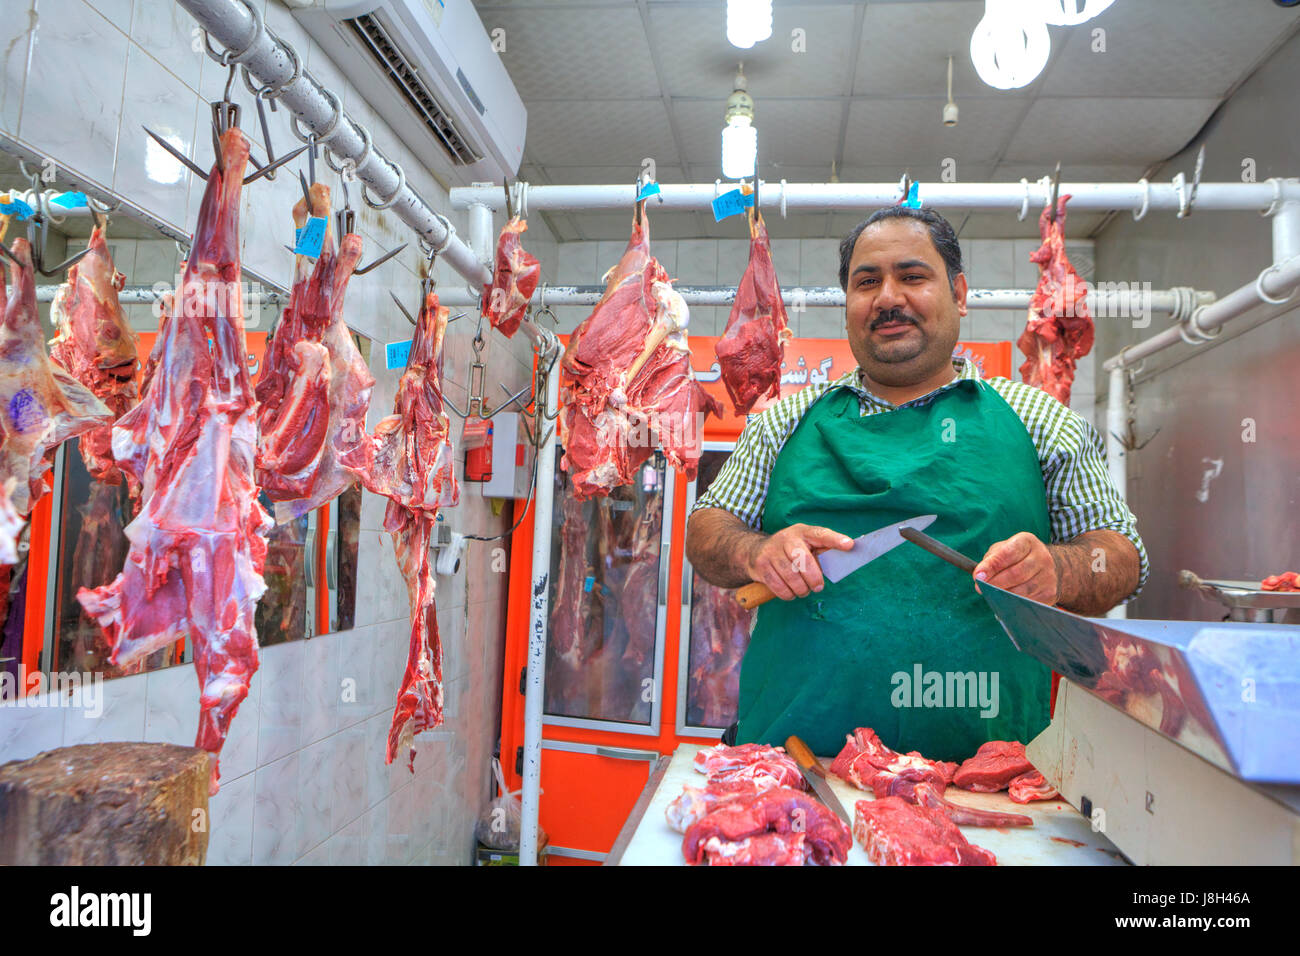 Bandar Abbas, Provinz Hormozgan, Iran - 16. April 2017: iranische Metzger schneidet Portionen Fleisch auf dem Basar. Stockfoto